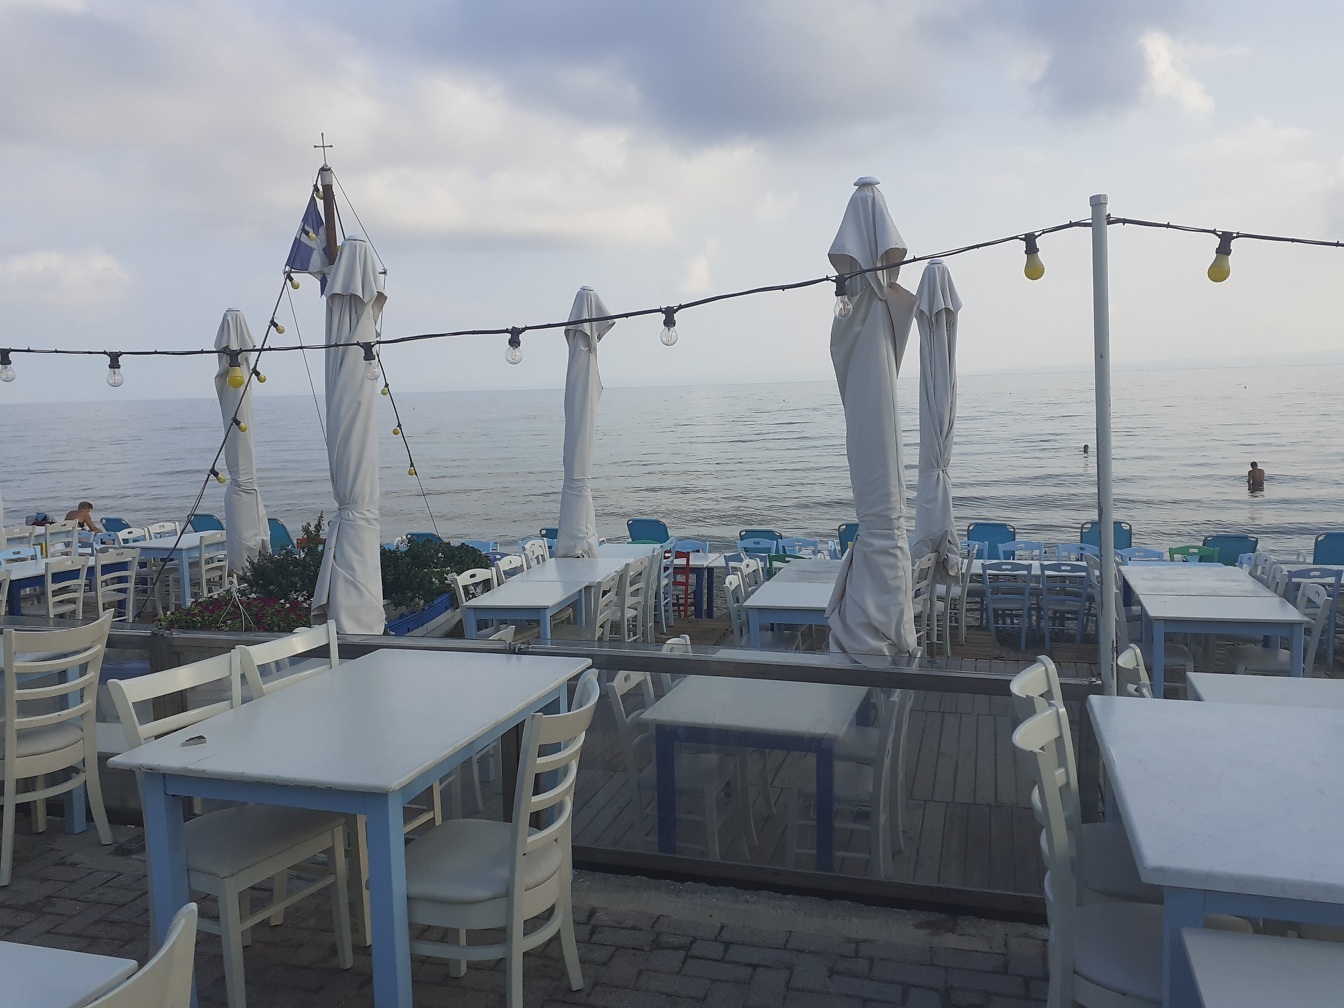 Tom terrasse på strandrestaurant med hvite stoler og bord